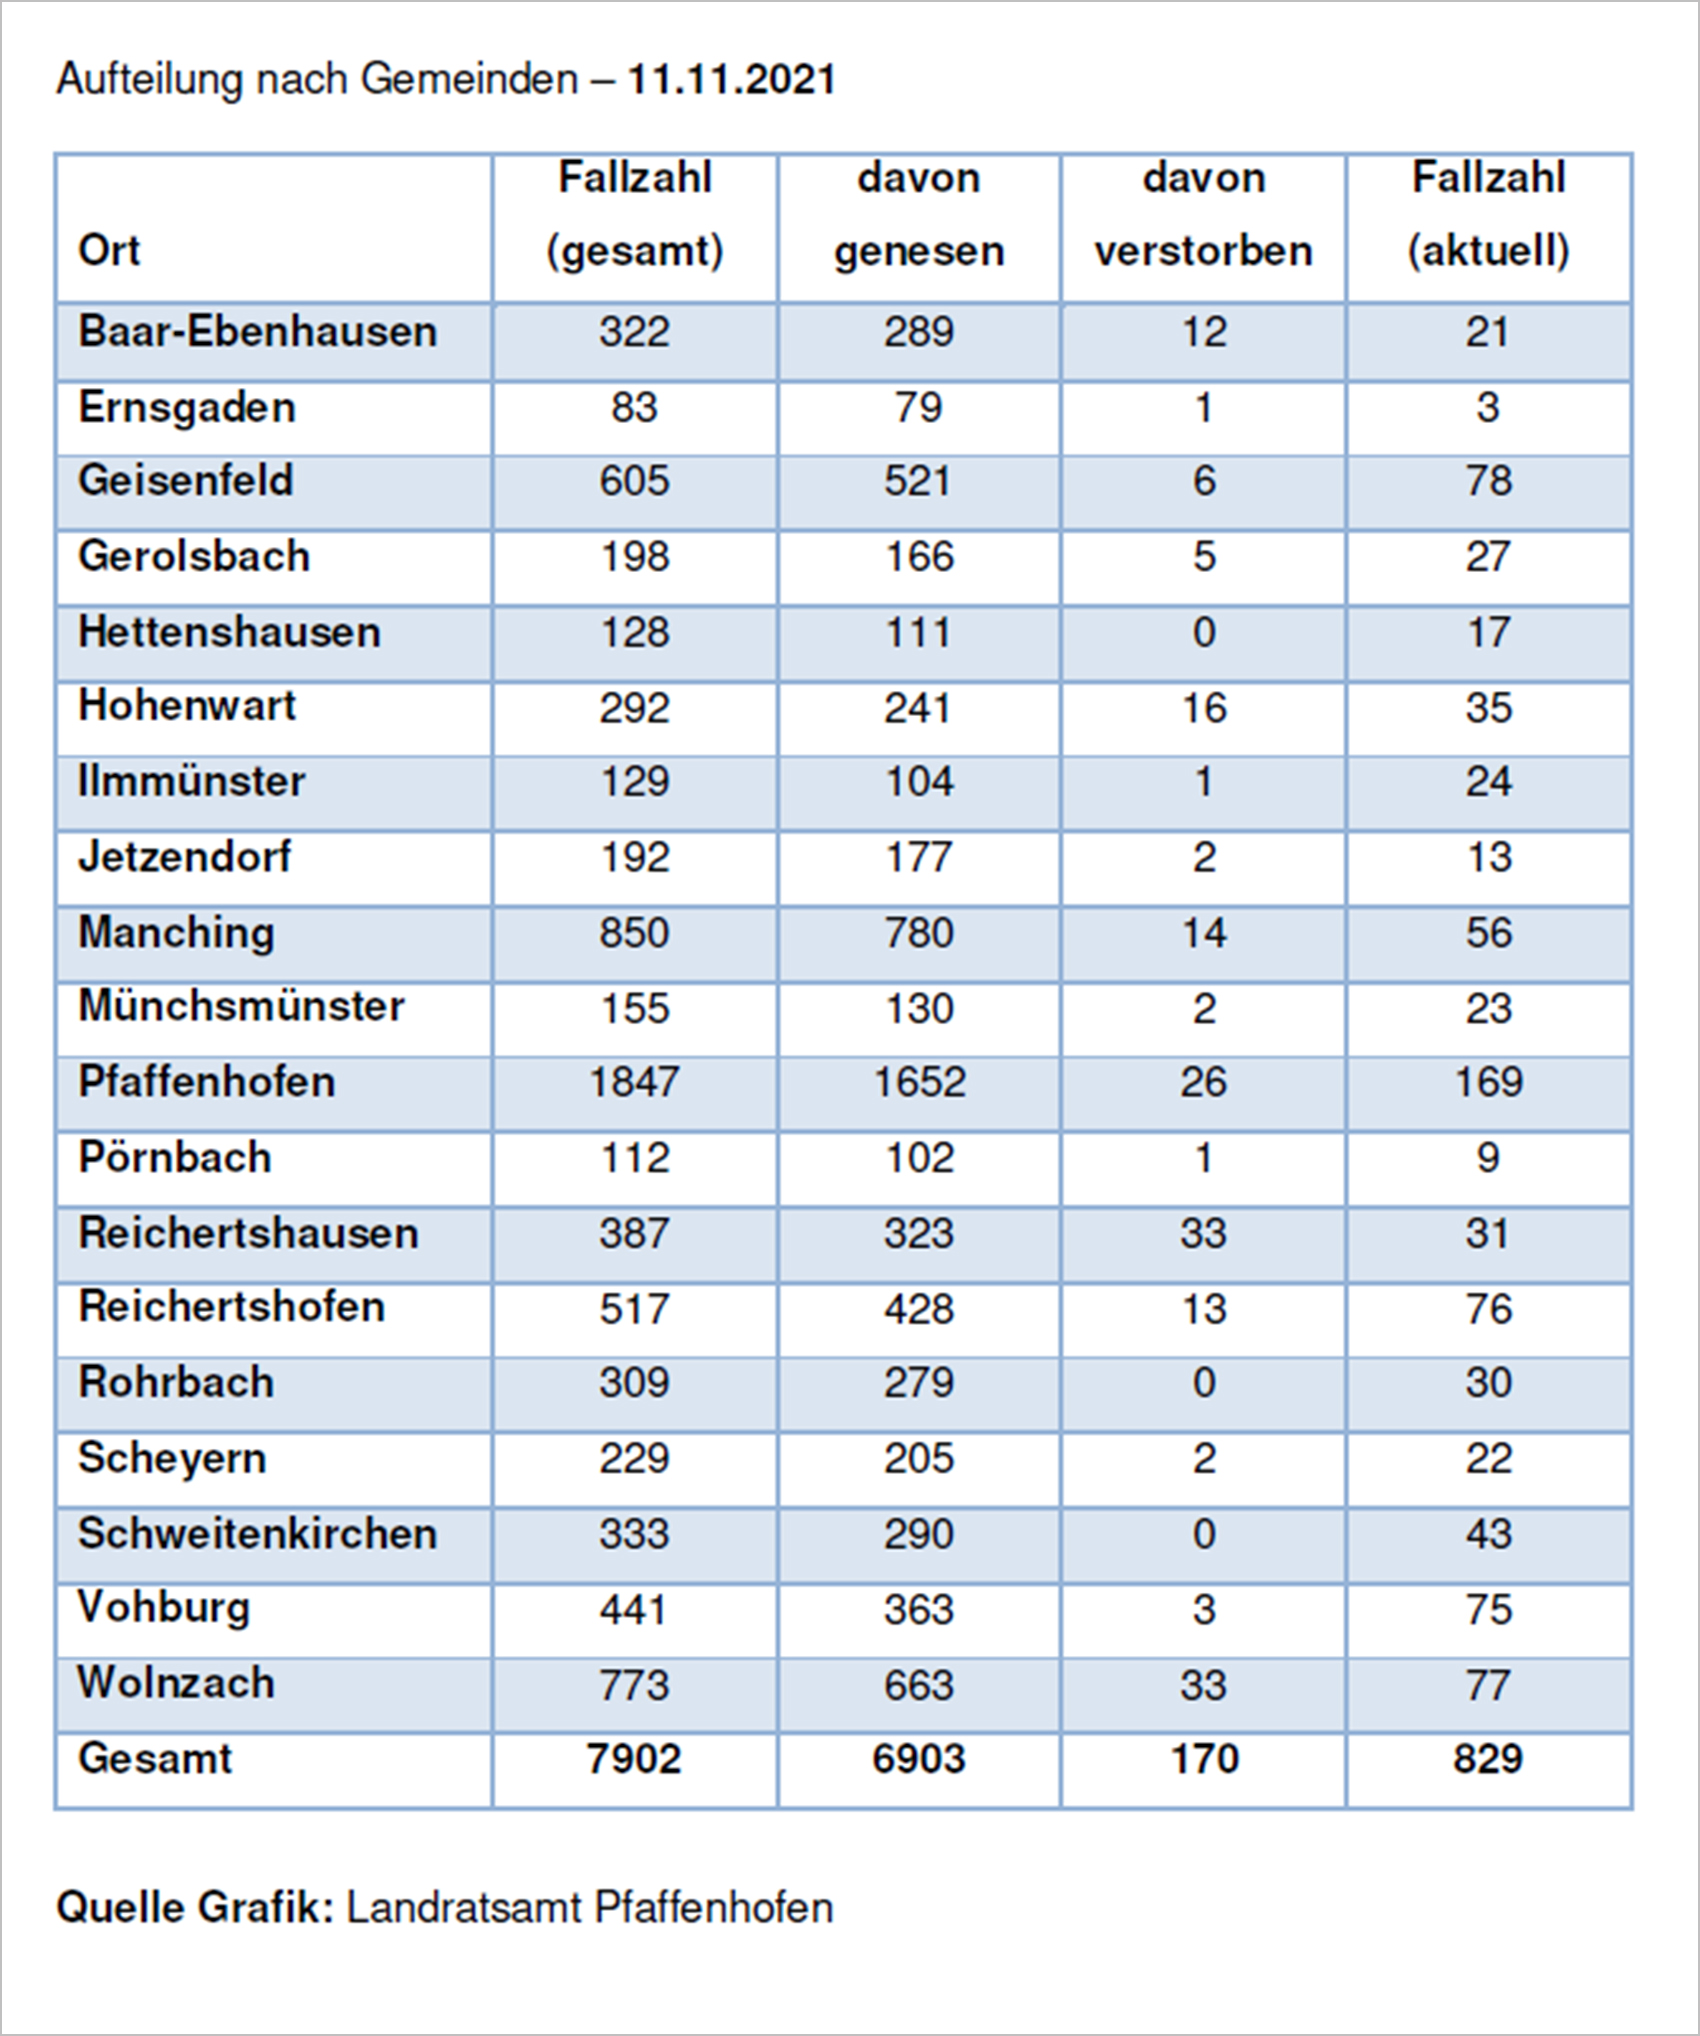 Verteilung der Fallzahlen auf die Landkreisgemeinden - 11.11.2021